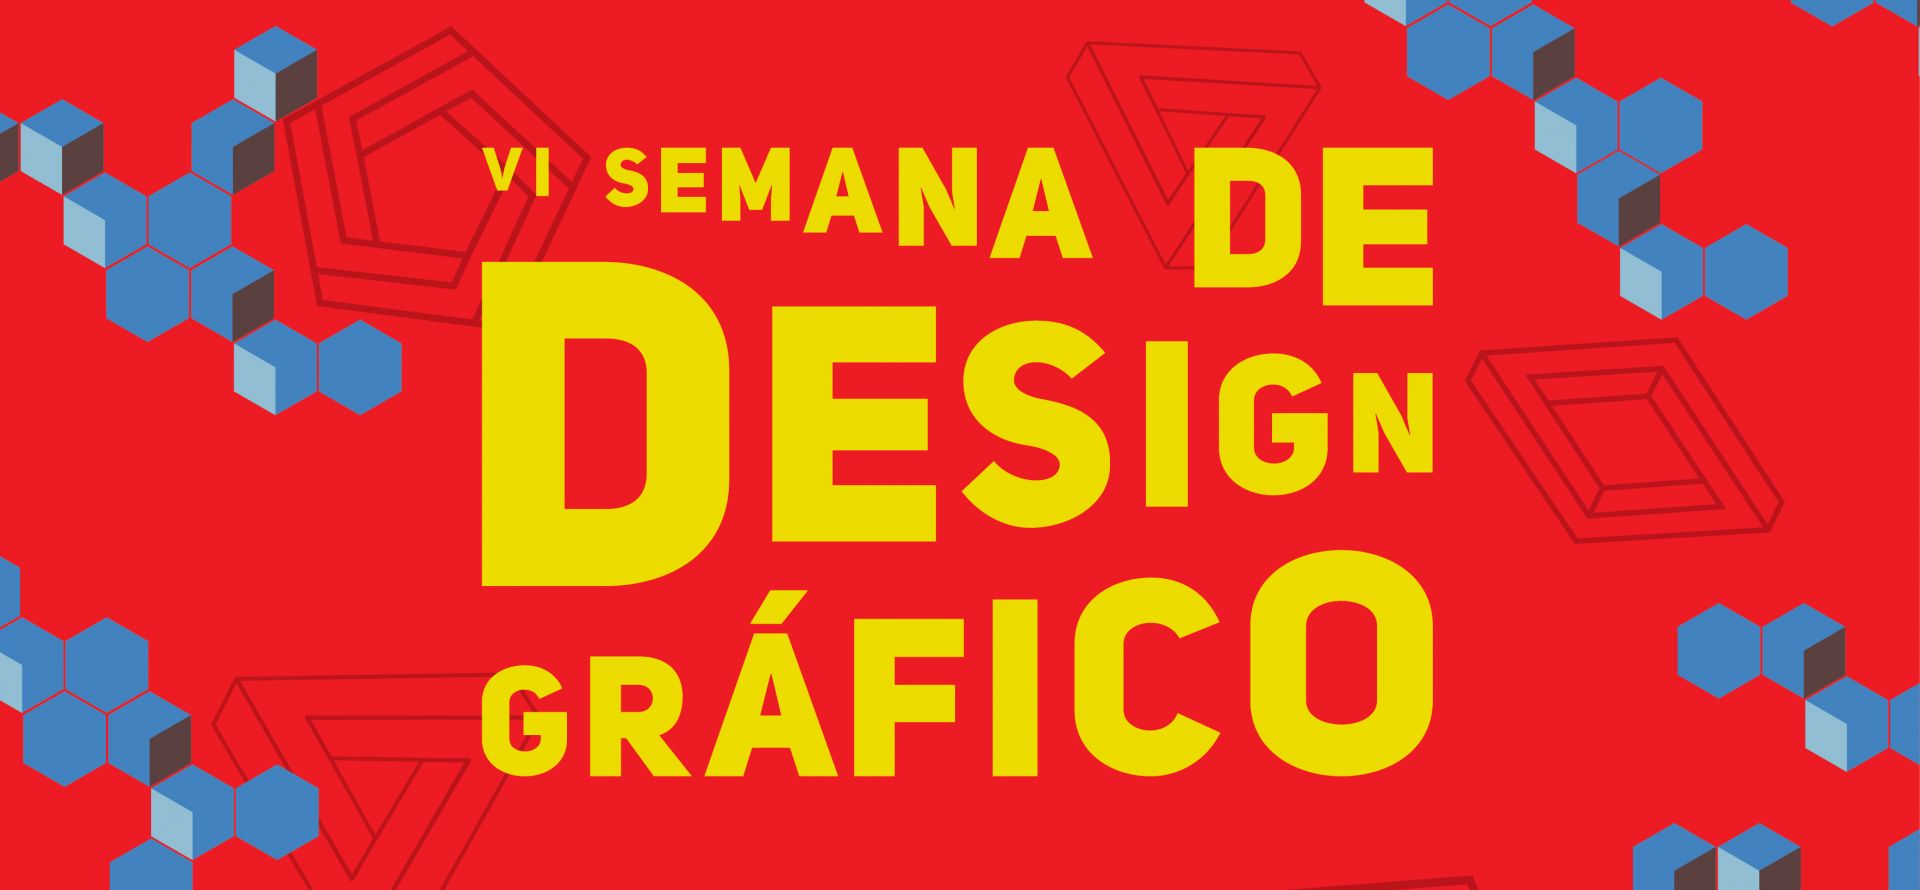 VI Semana de Design Gráfico será realizada de 8 a 10 de maio